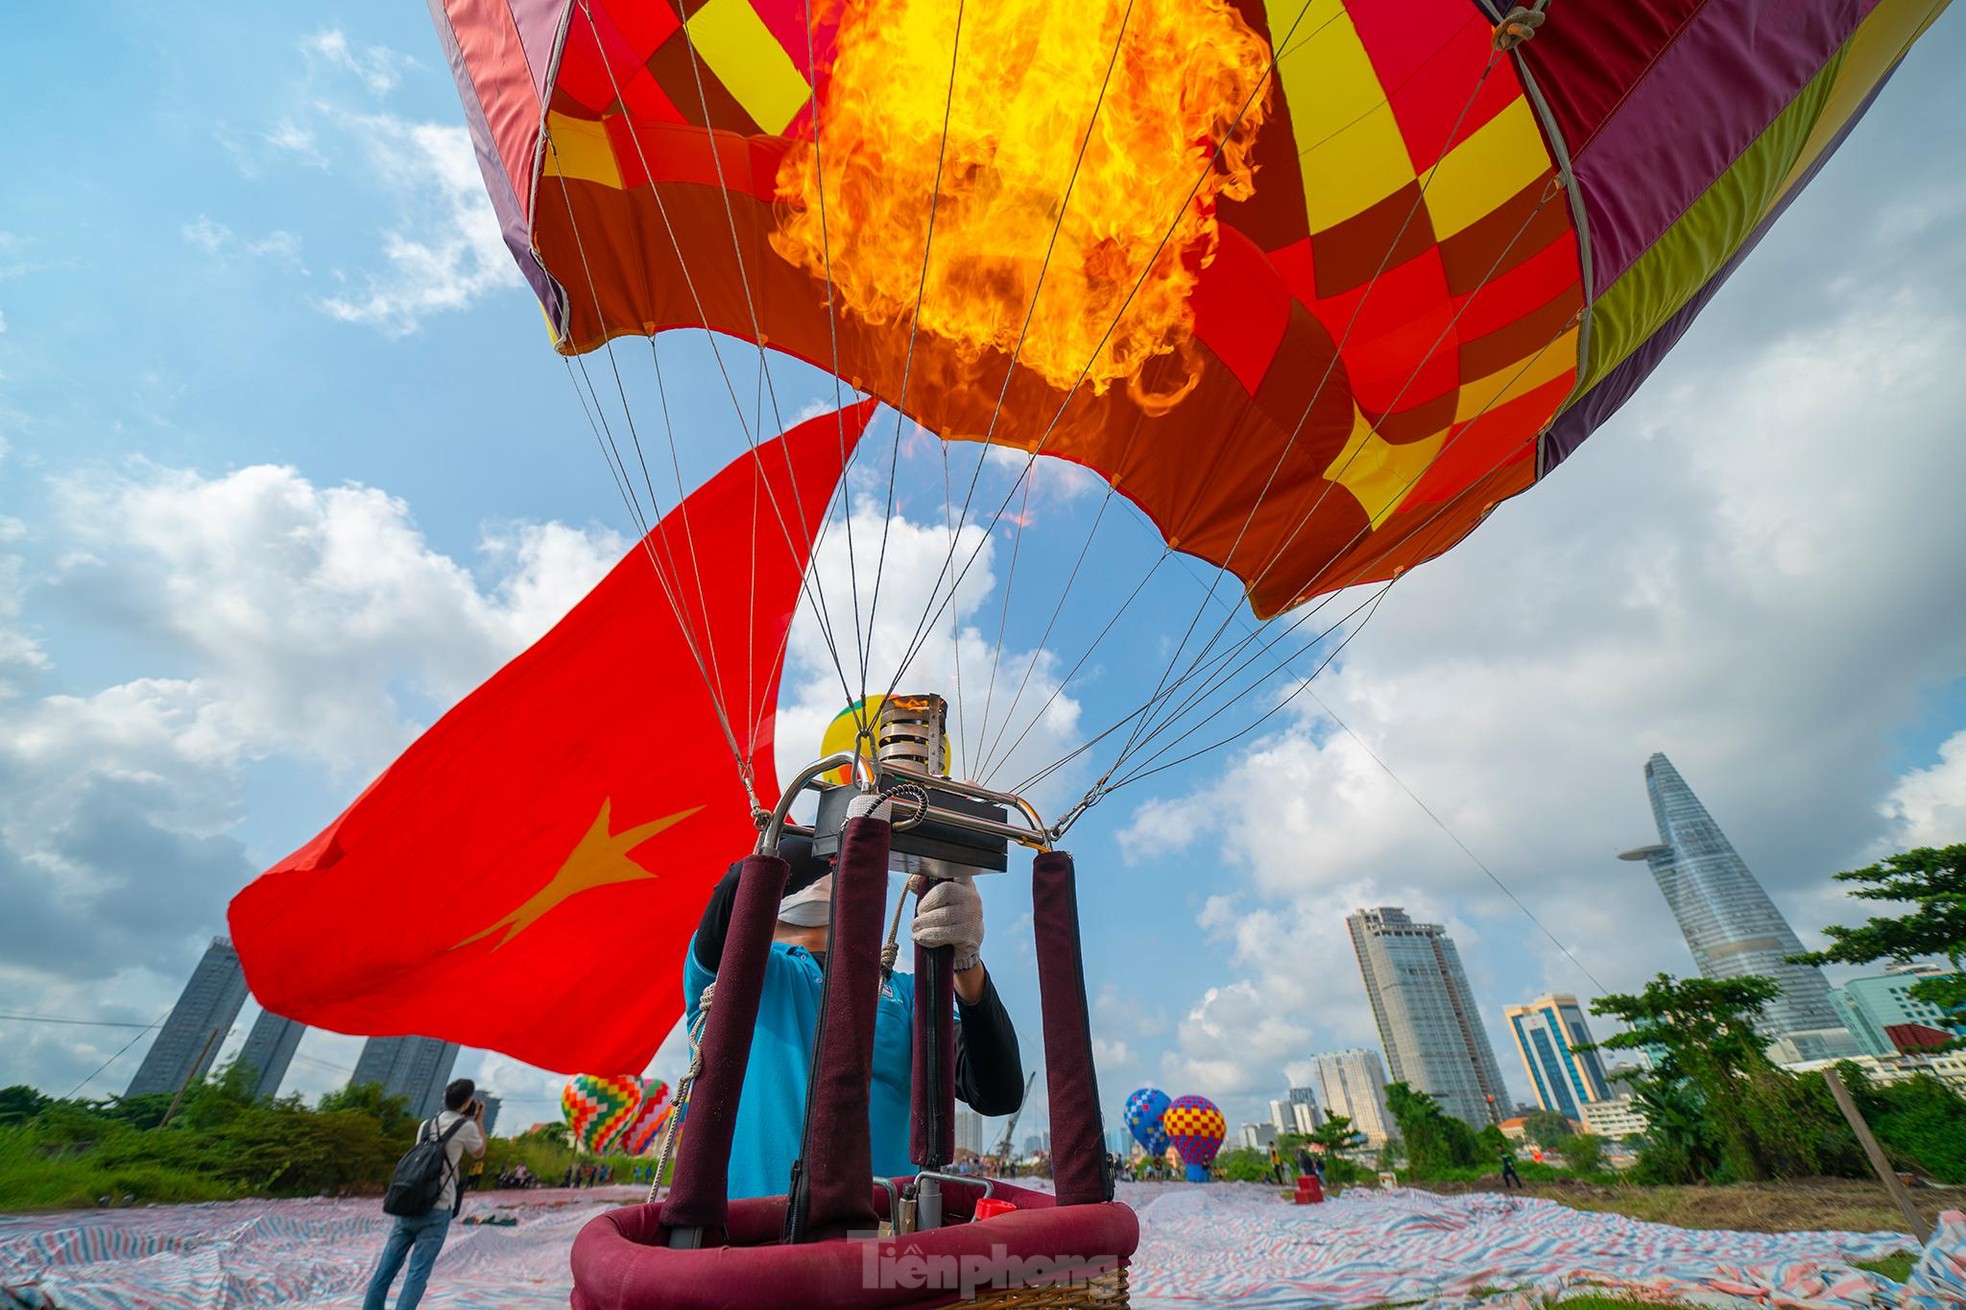 Cận cảnh khinh khí cầu kéo Quốc kỳ rộng 1800m2 mừng Quốc khánh 2/9 - Ảnh 28.